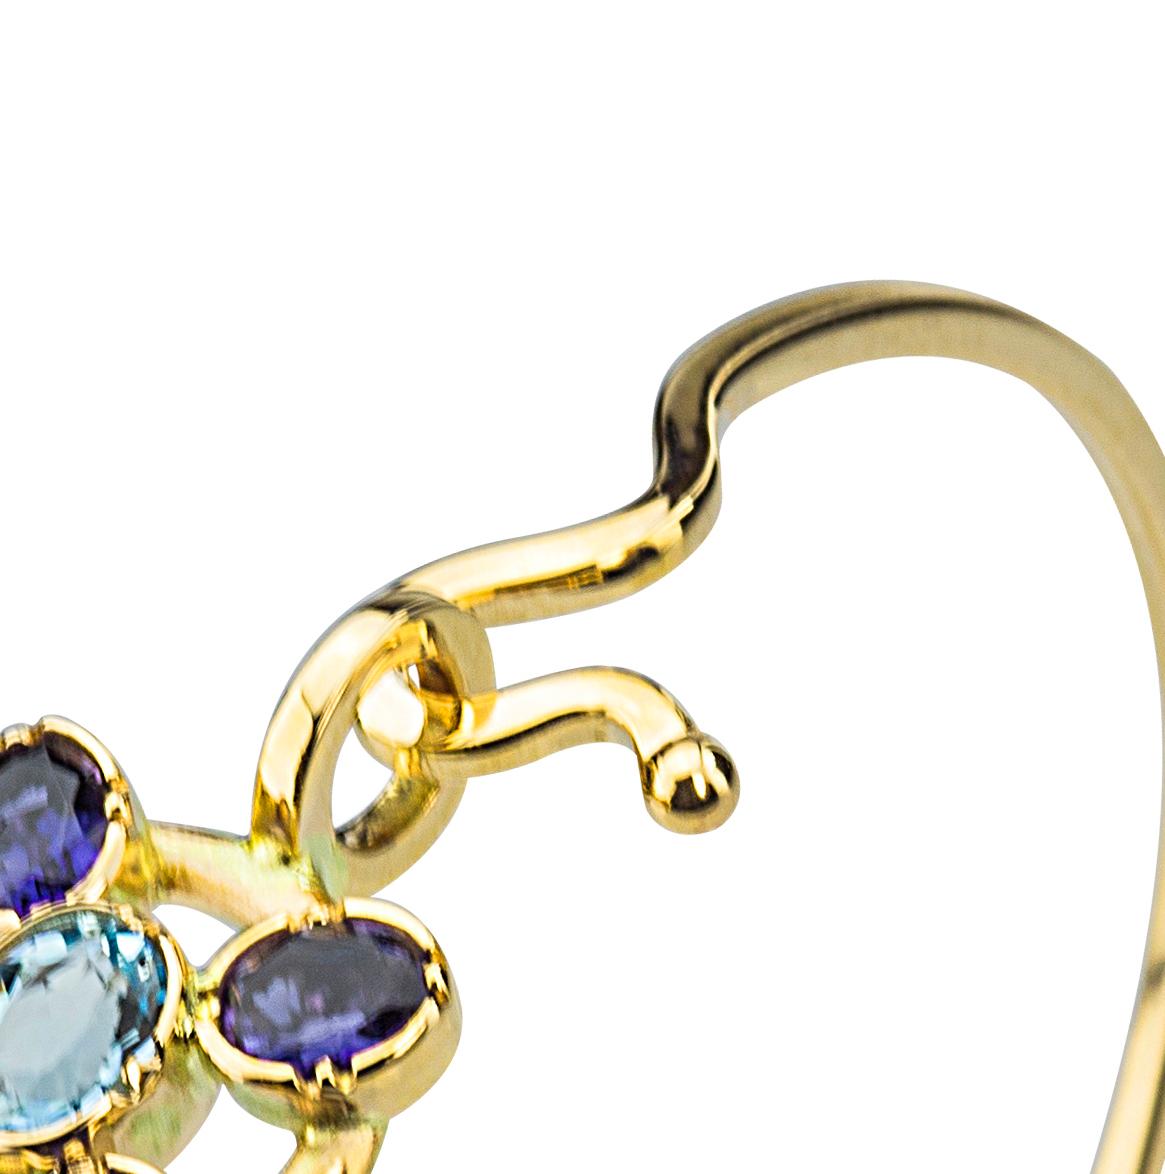  18K Gold Blue Sapphires Aquamarine Twisted Bangle Modern Flower Design Bracelet For Sale 3